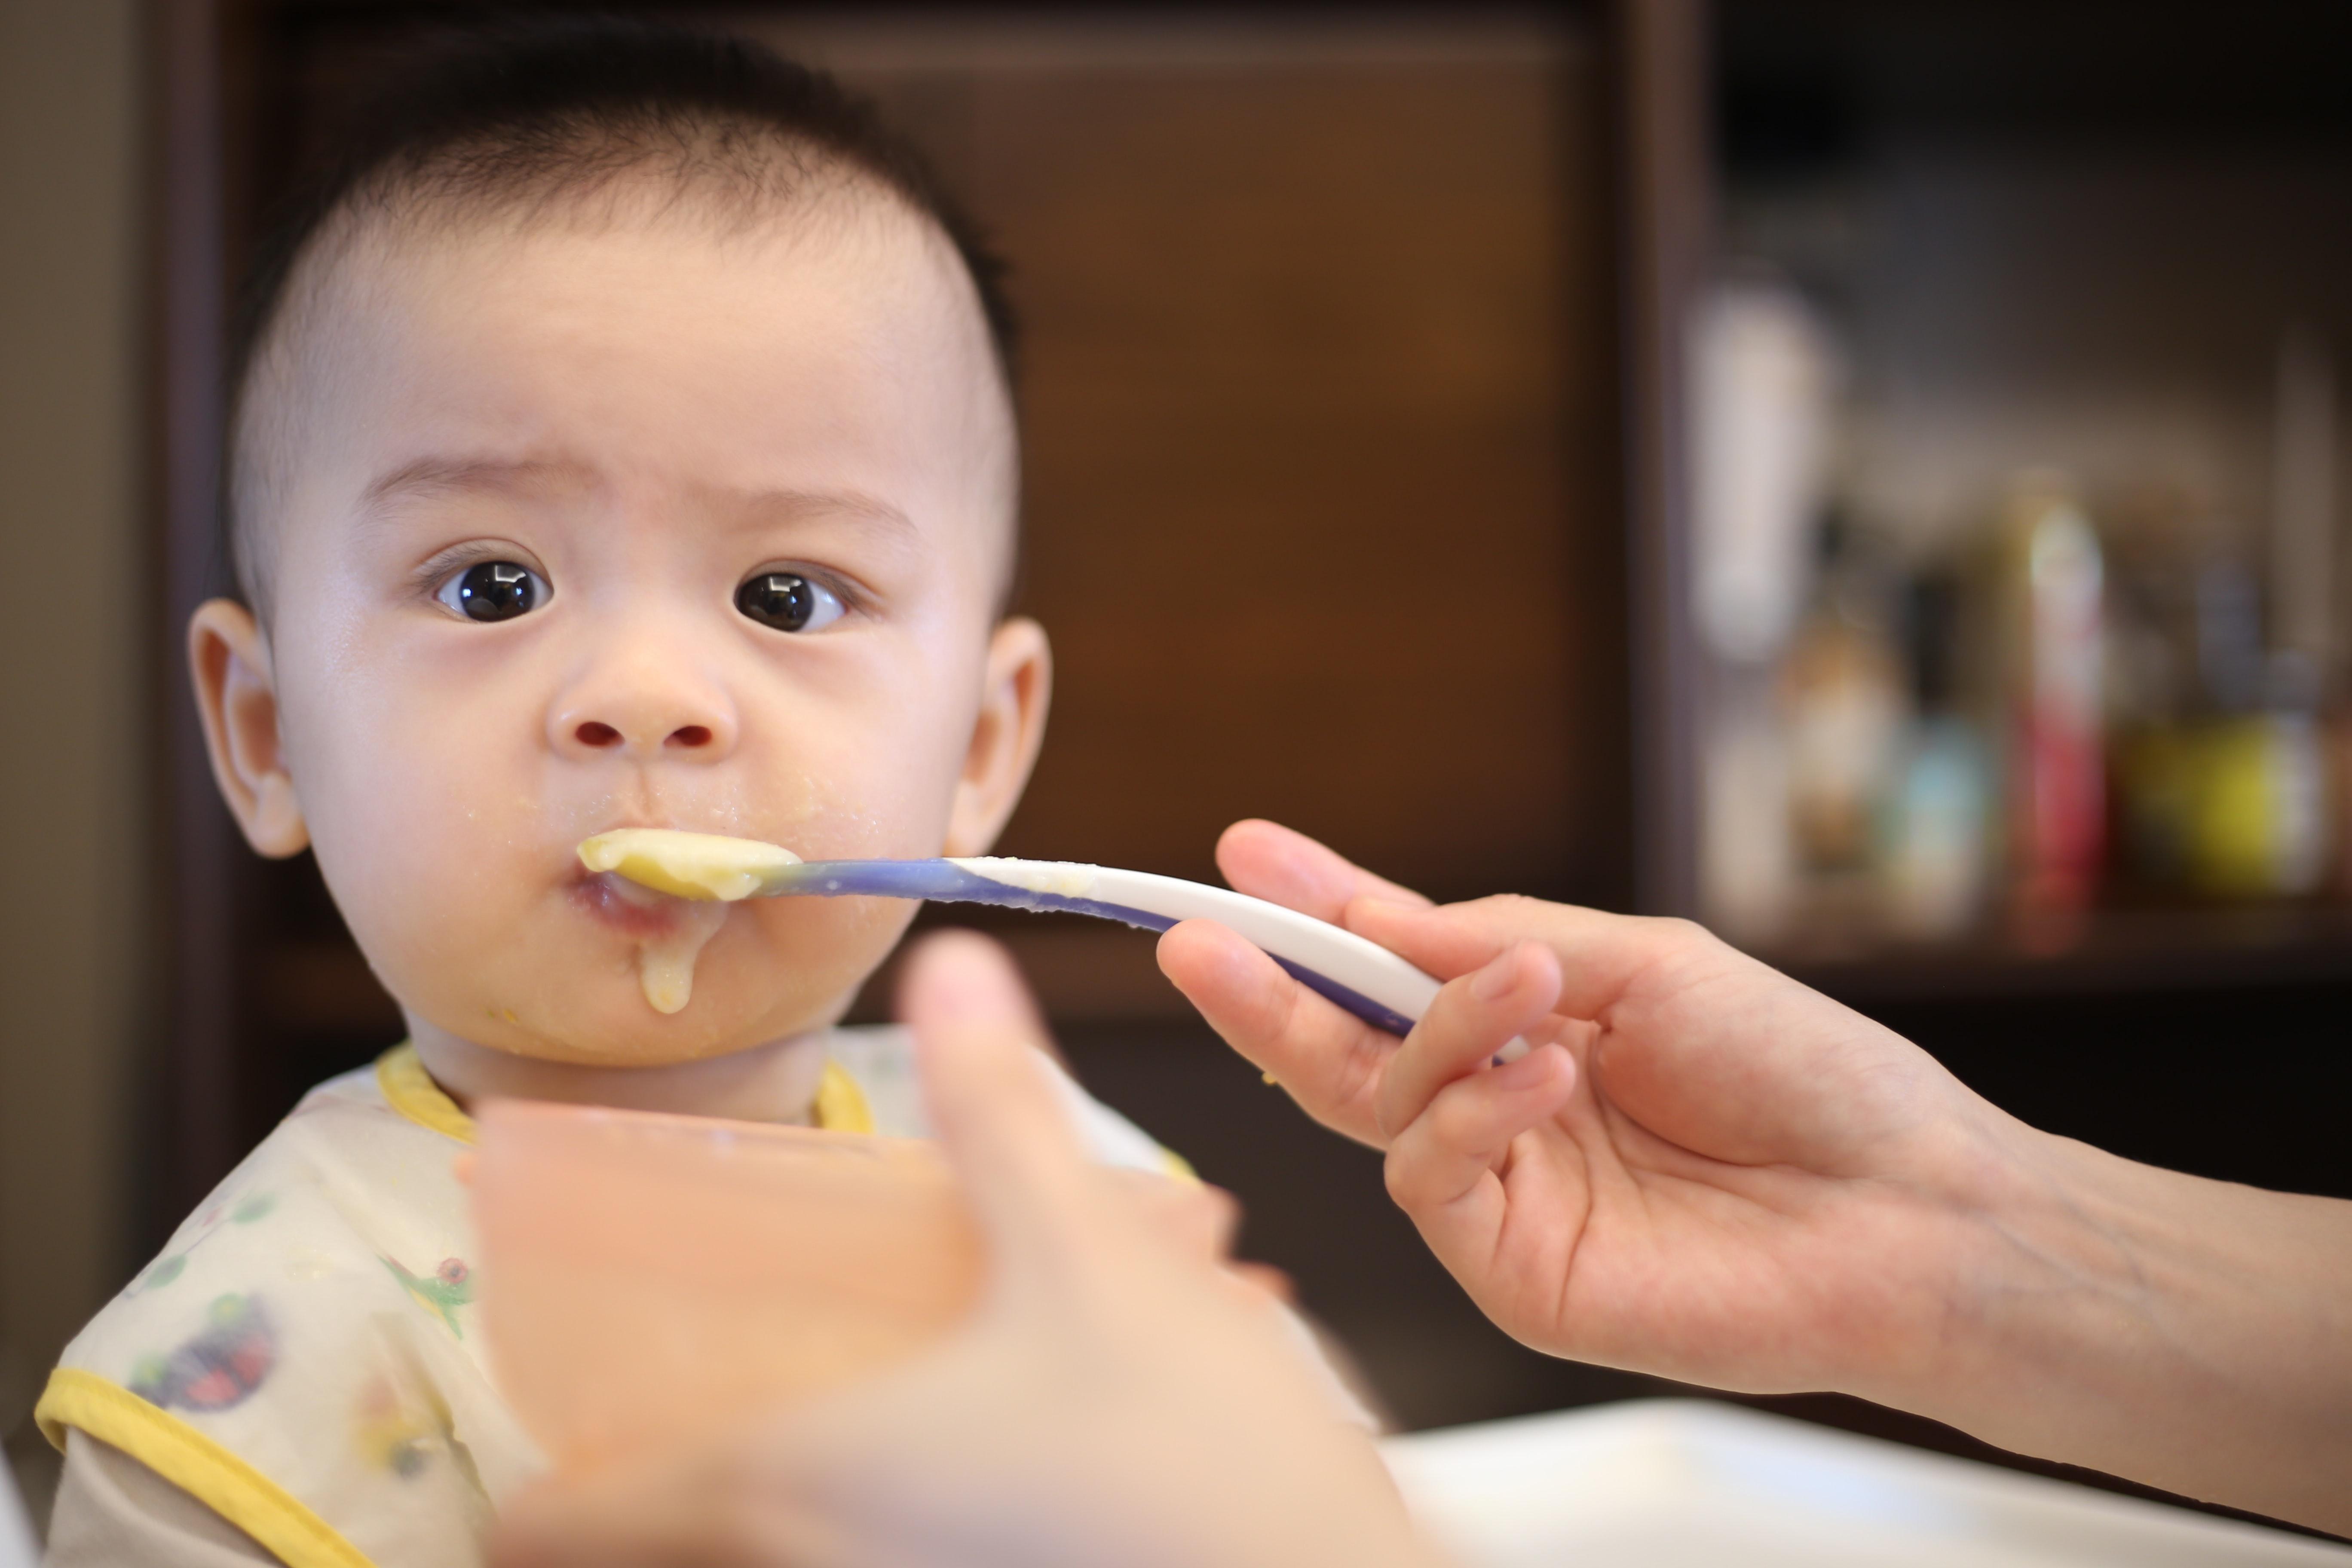 Los expertos recomiendan no obligar a los niños a comer